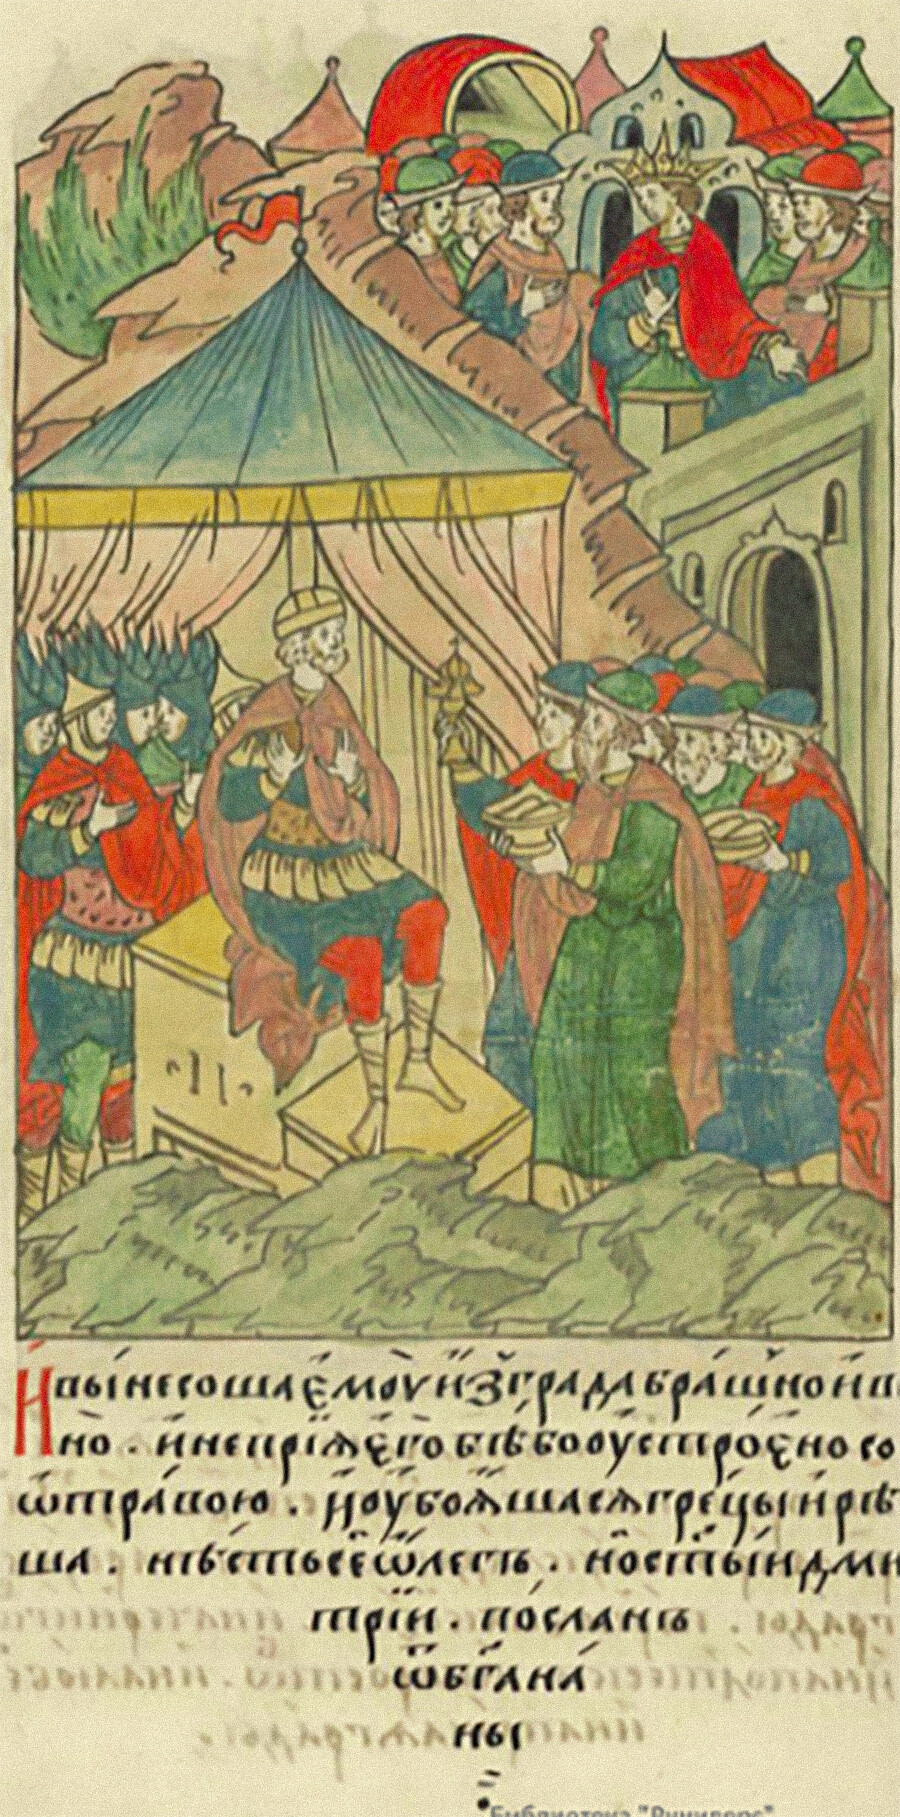 Embajada bizantina llega a Oleg bajo las murallas de Zar Grad, mediados del siglo XVI